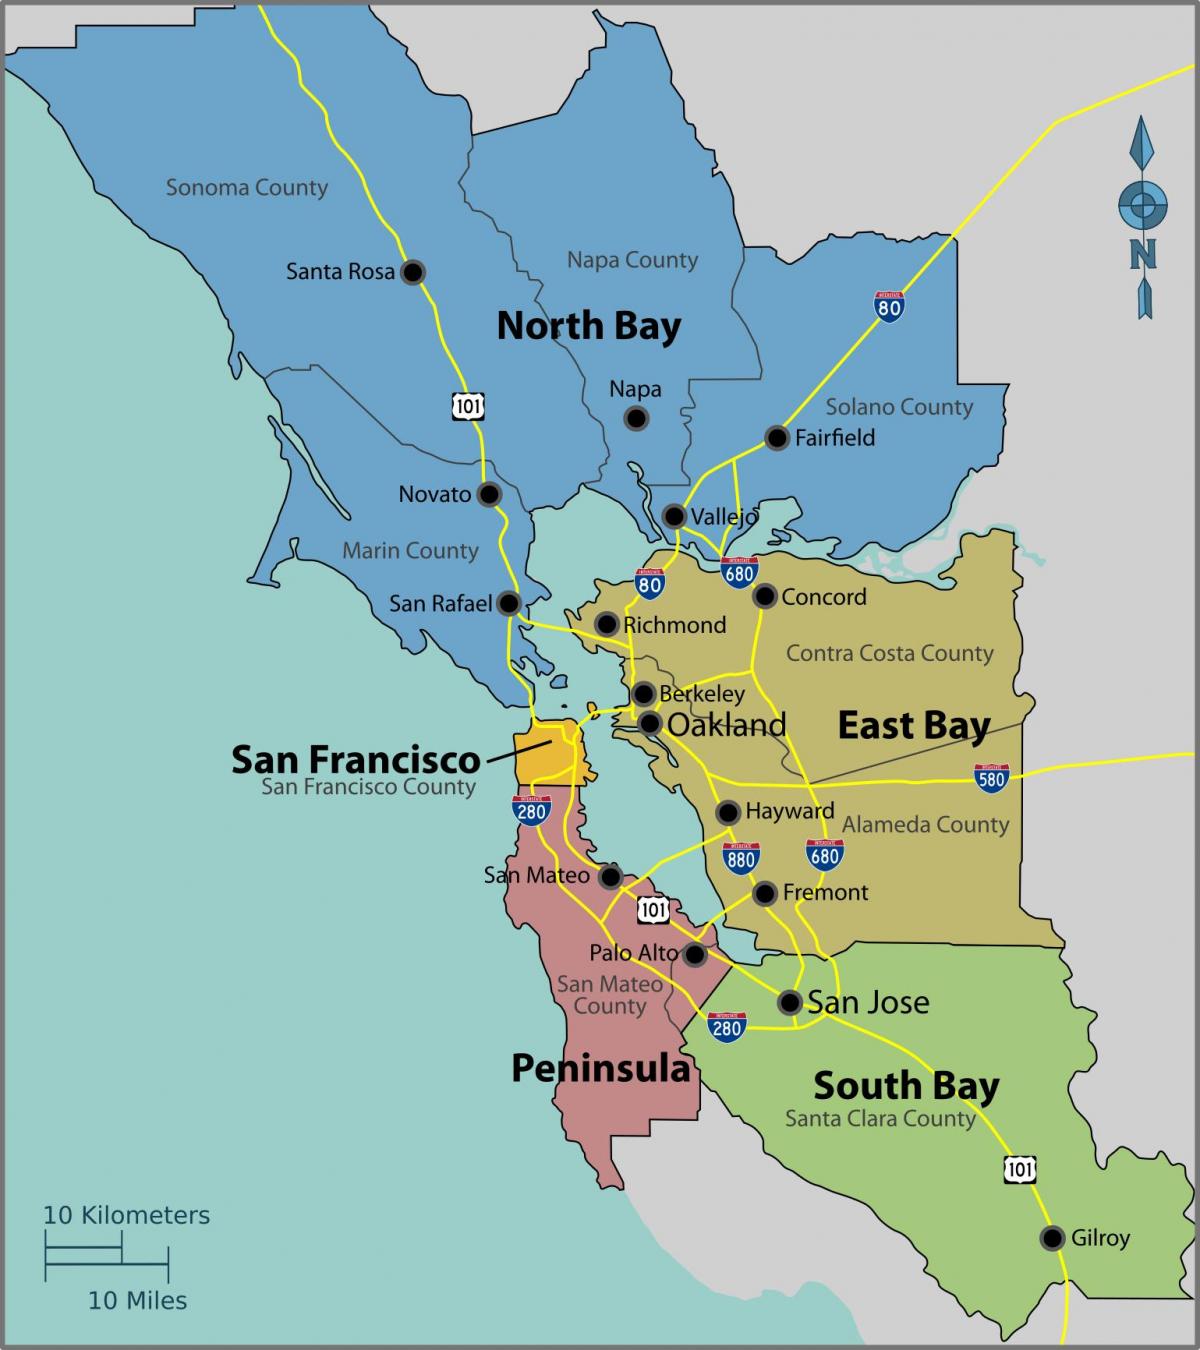 San Francisco bay di peta